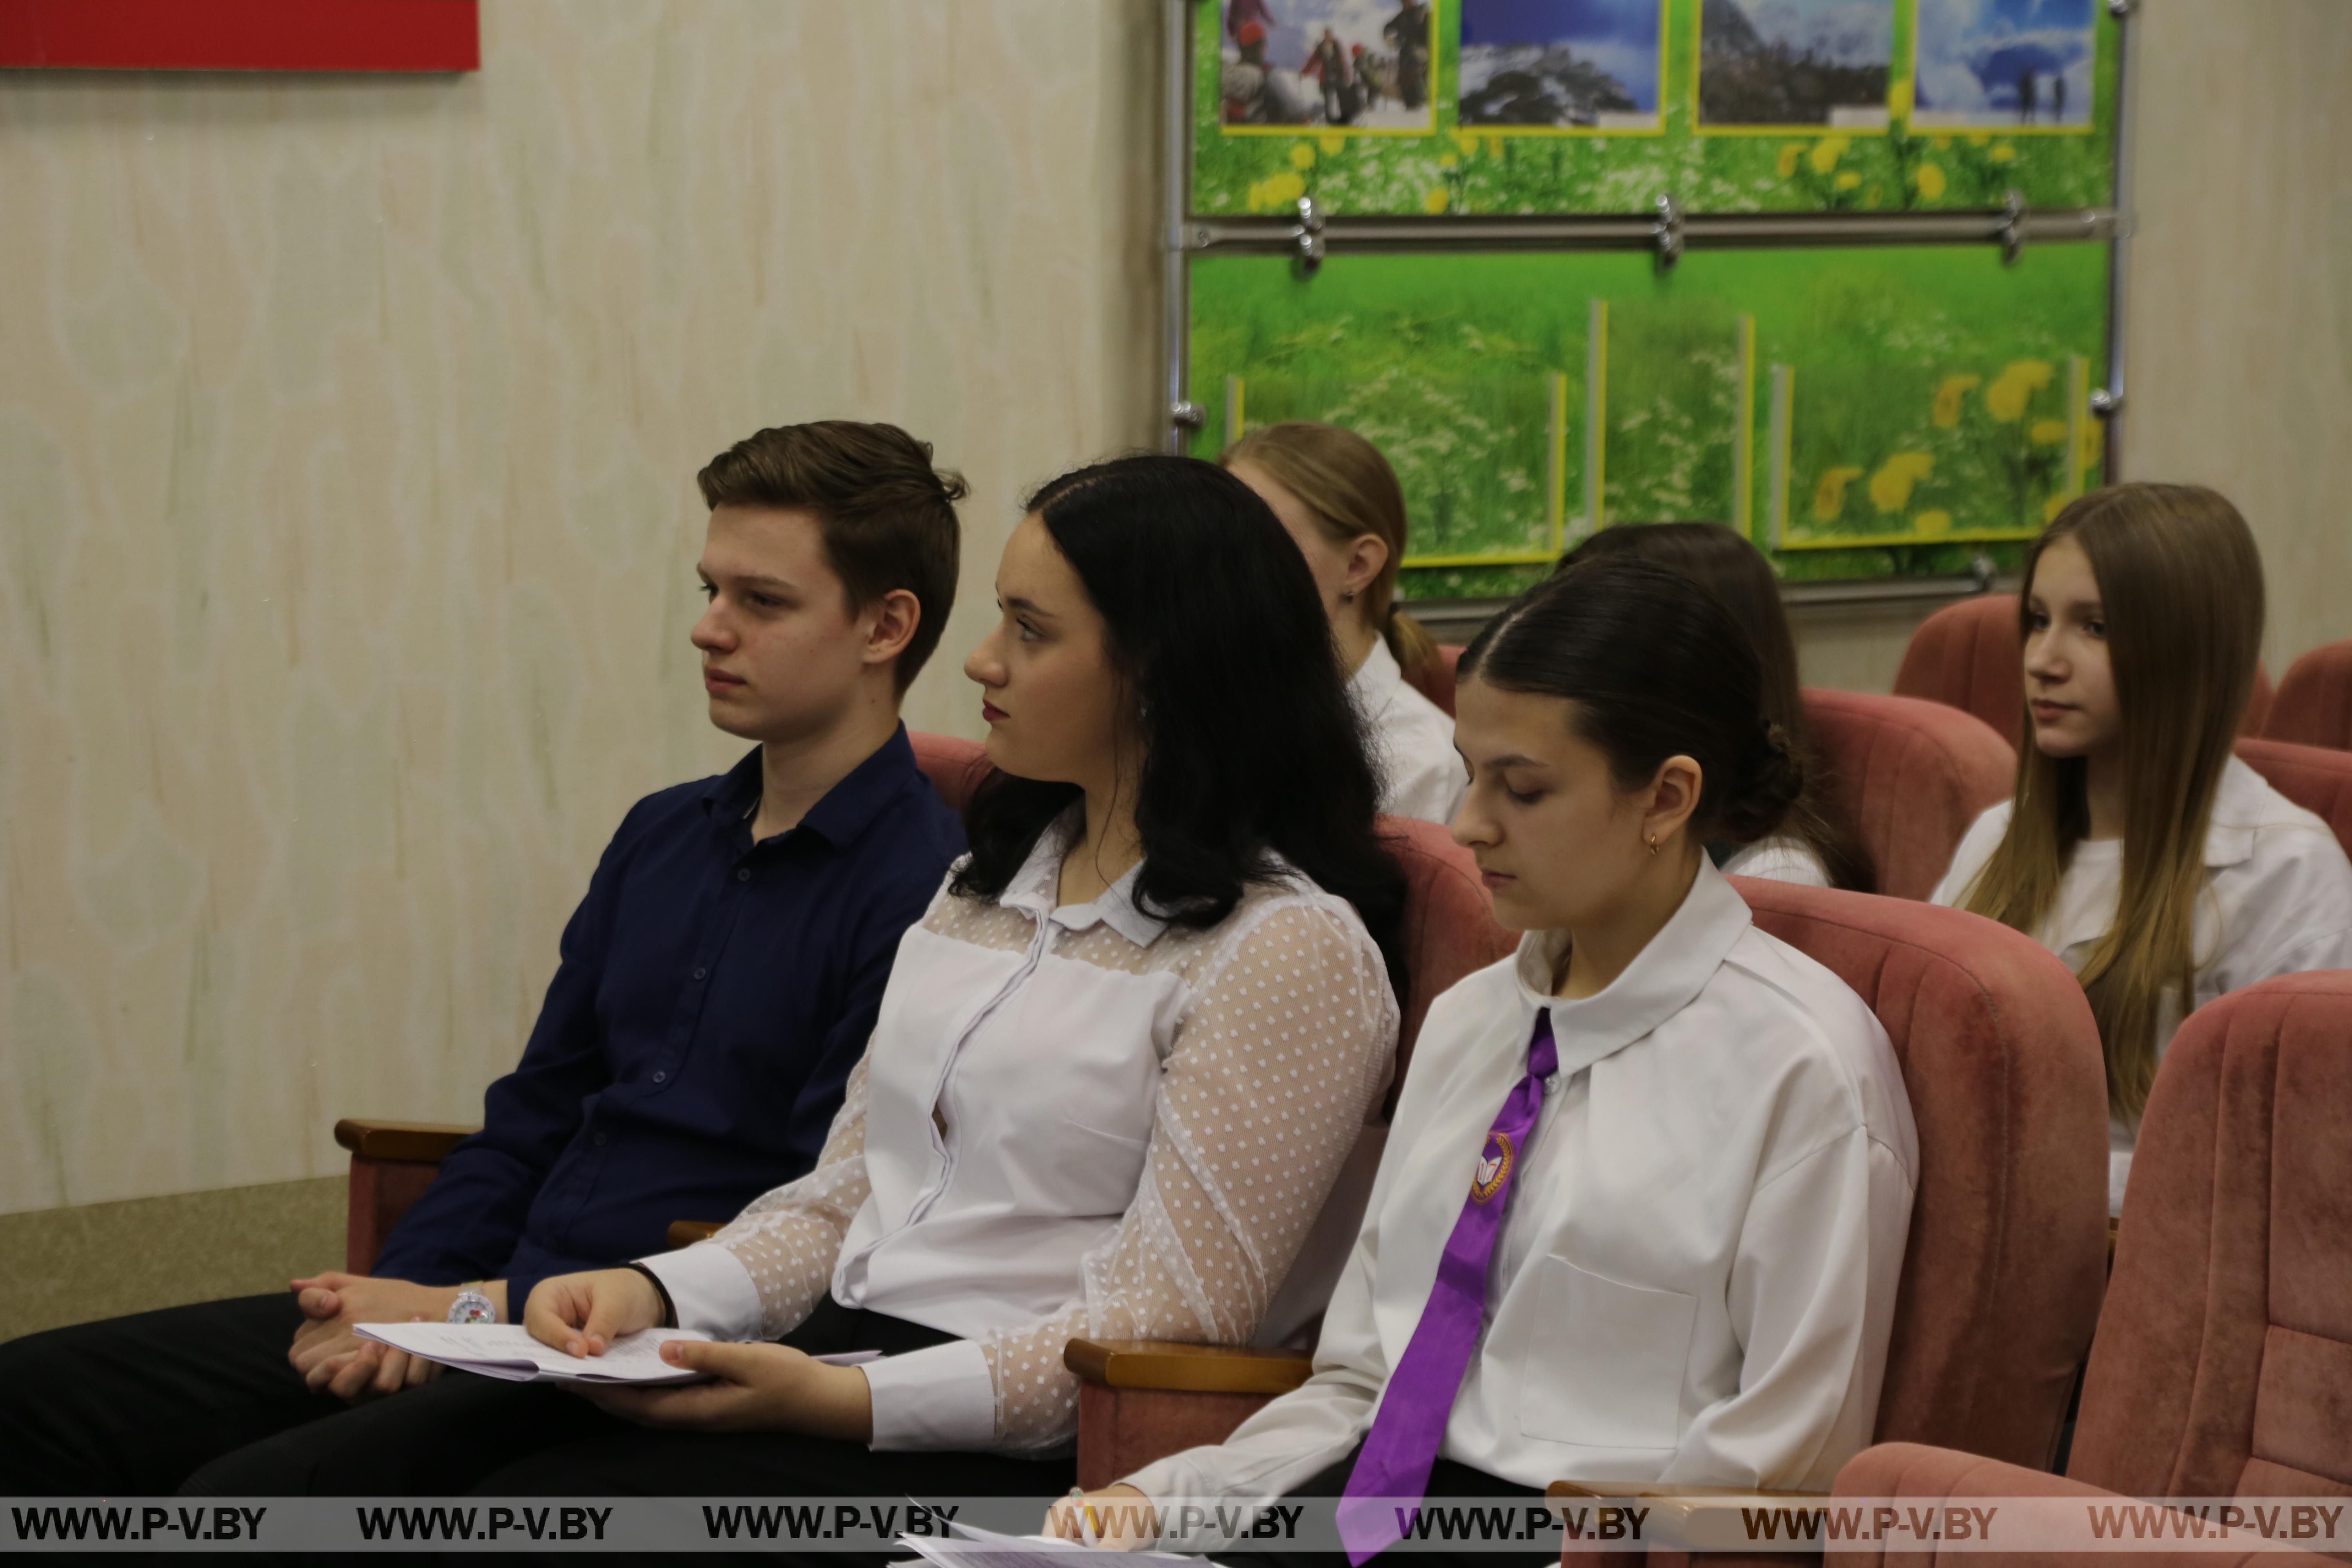 В Пинске состоялась встреча представителей детского фонда ЮНИСЕФ в Республике Беларусь с лидерами городского детского парламента.